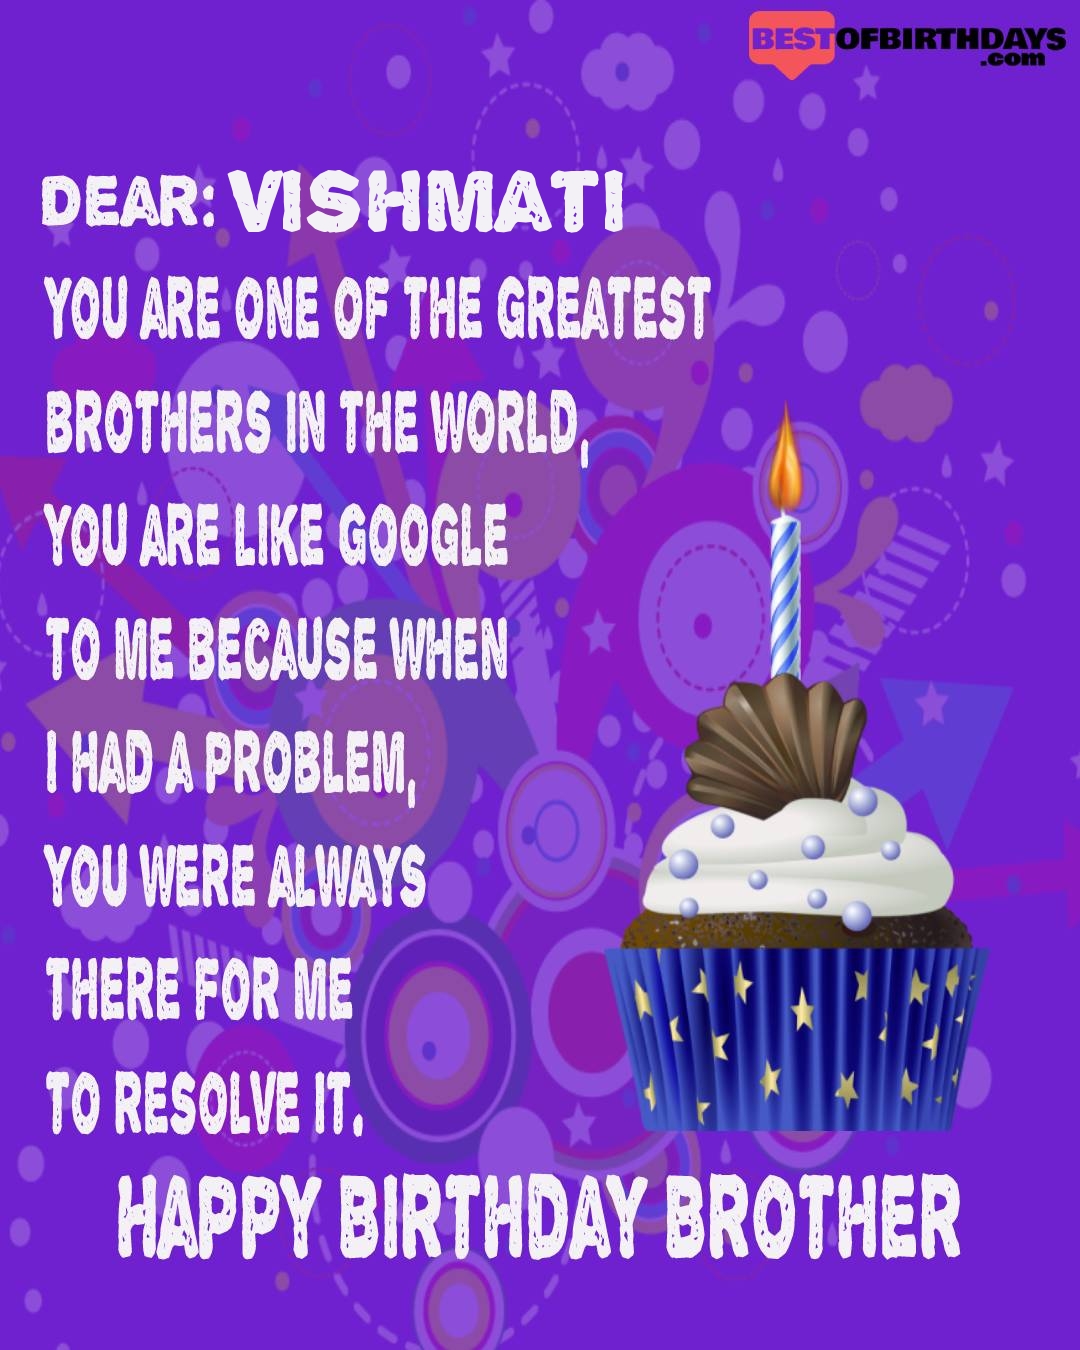 Happy birthday vishmati bhai brother bro